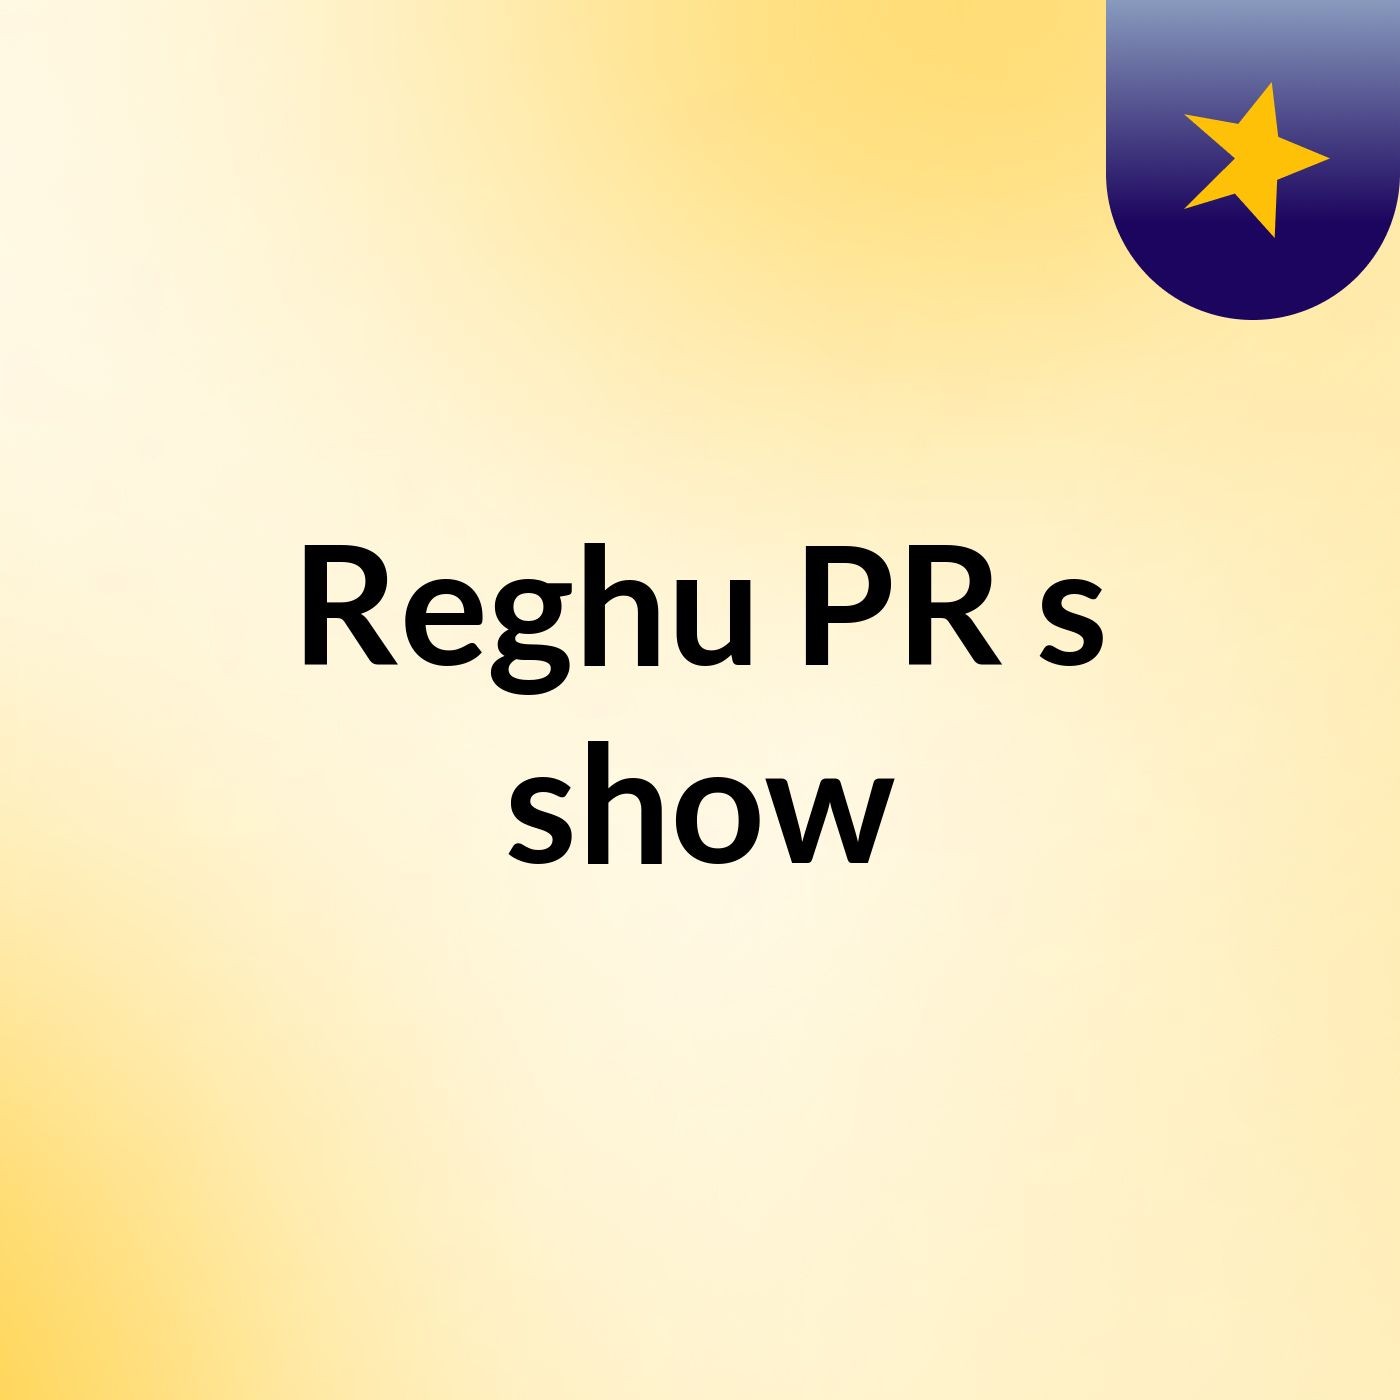 Reghu PR's show